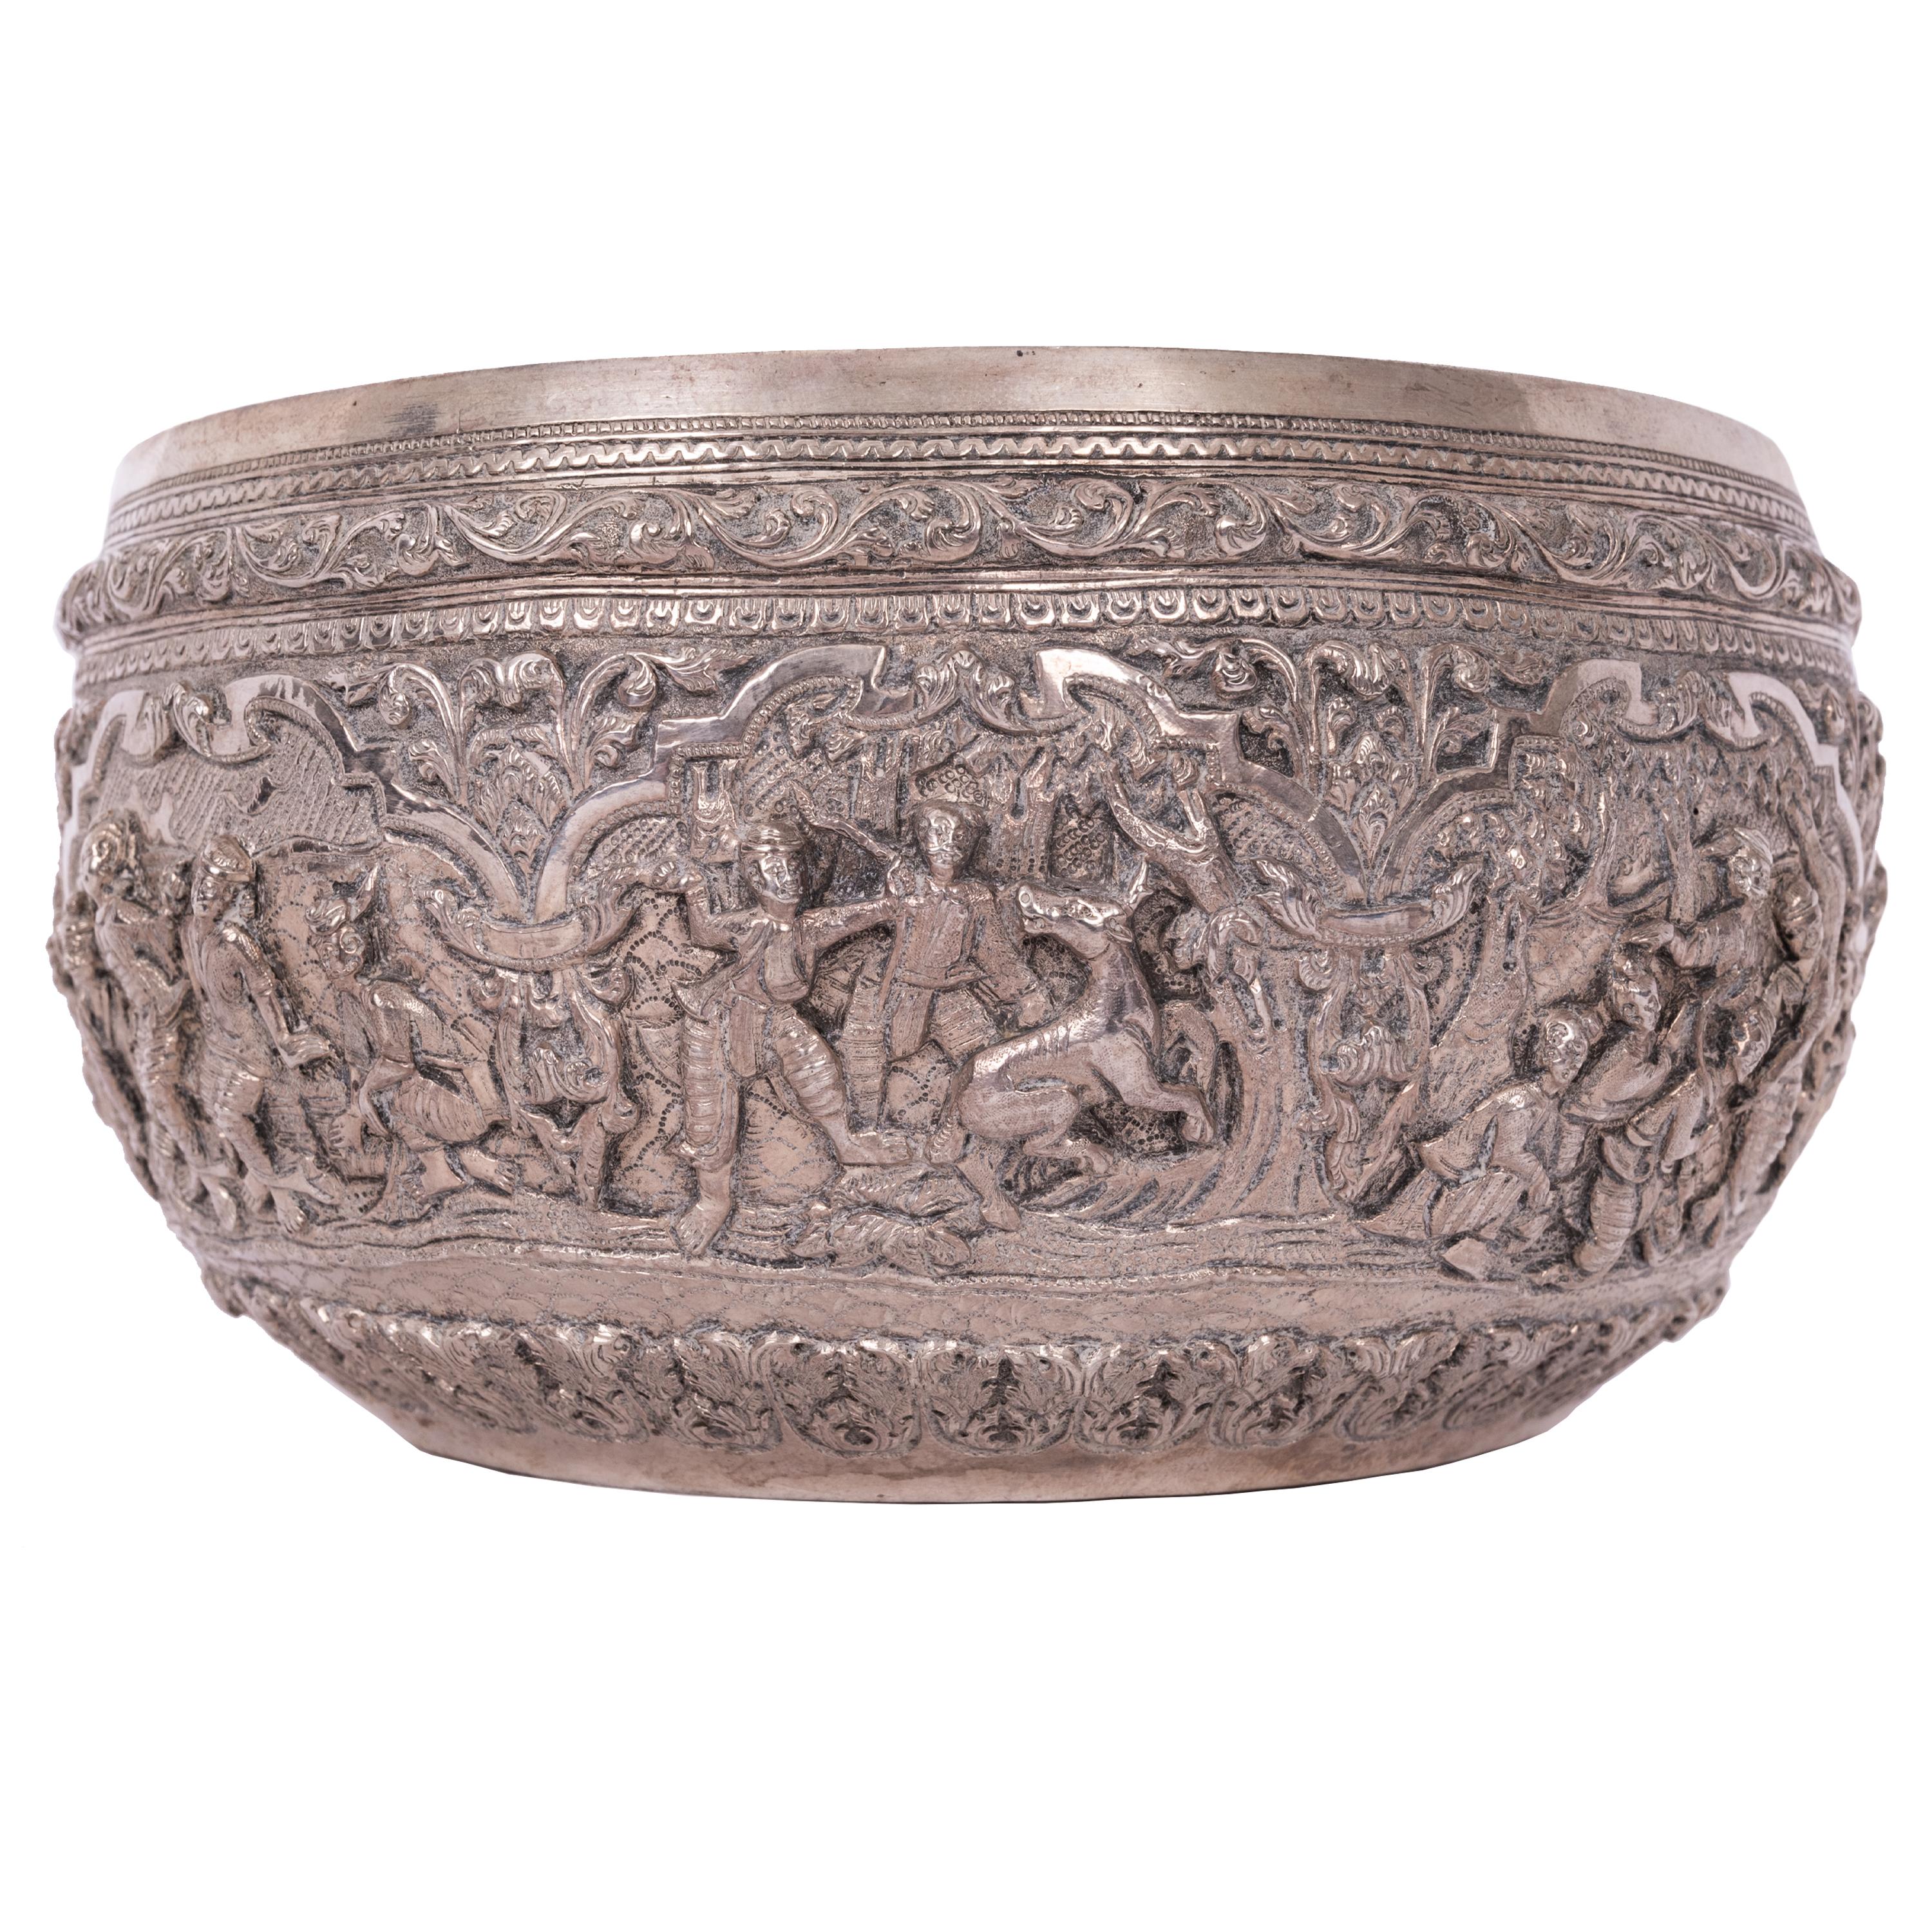 Très bon bol à offrande Thabeik en argent repoussé de Birmanie (Myanmar), vers 1890.
Le bol est attribué à Maung Yin Maung, avec une figure guanyin gravée sur la base, antérieure à la marque au tampon 